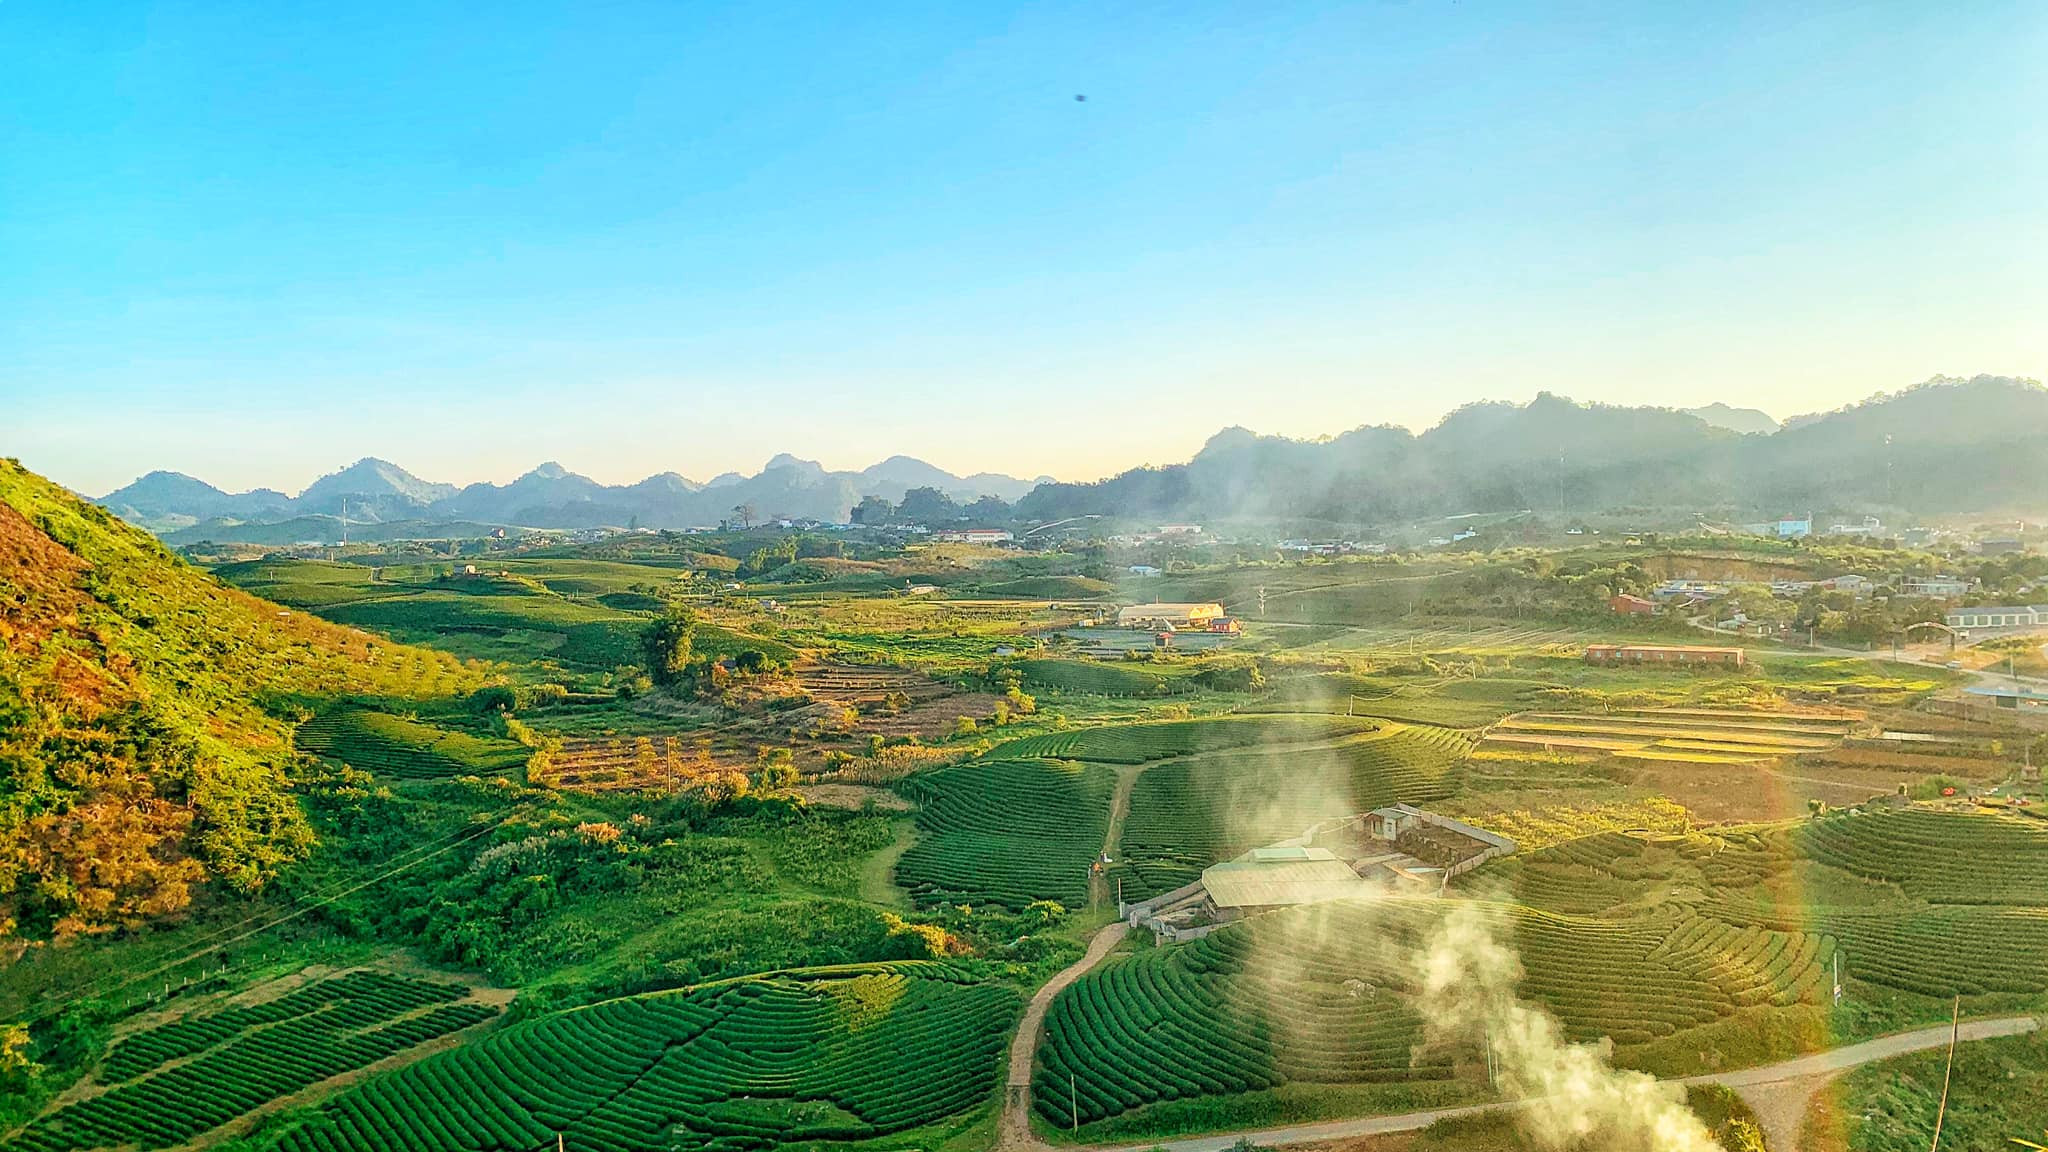 Du lịch Tết Canh Tý - Tour Mộc Châu 2 ngày giá tốt từ Hà Nội